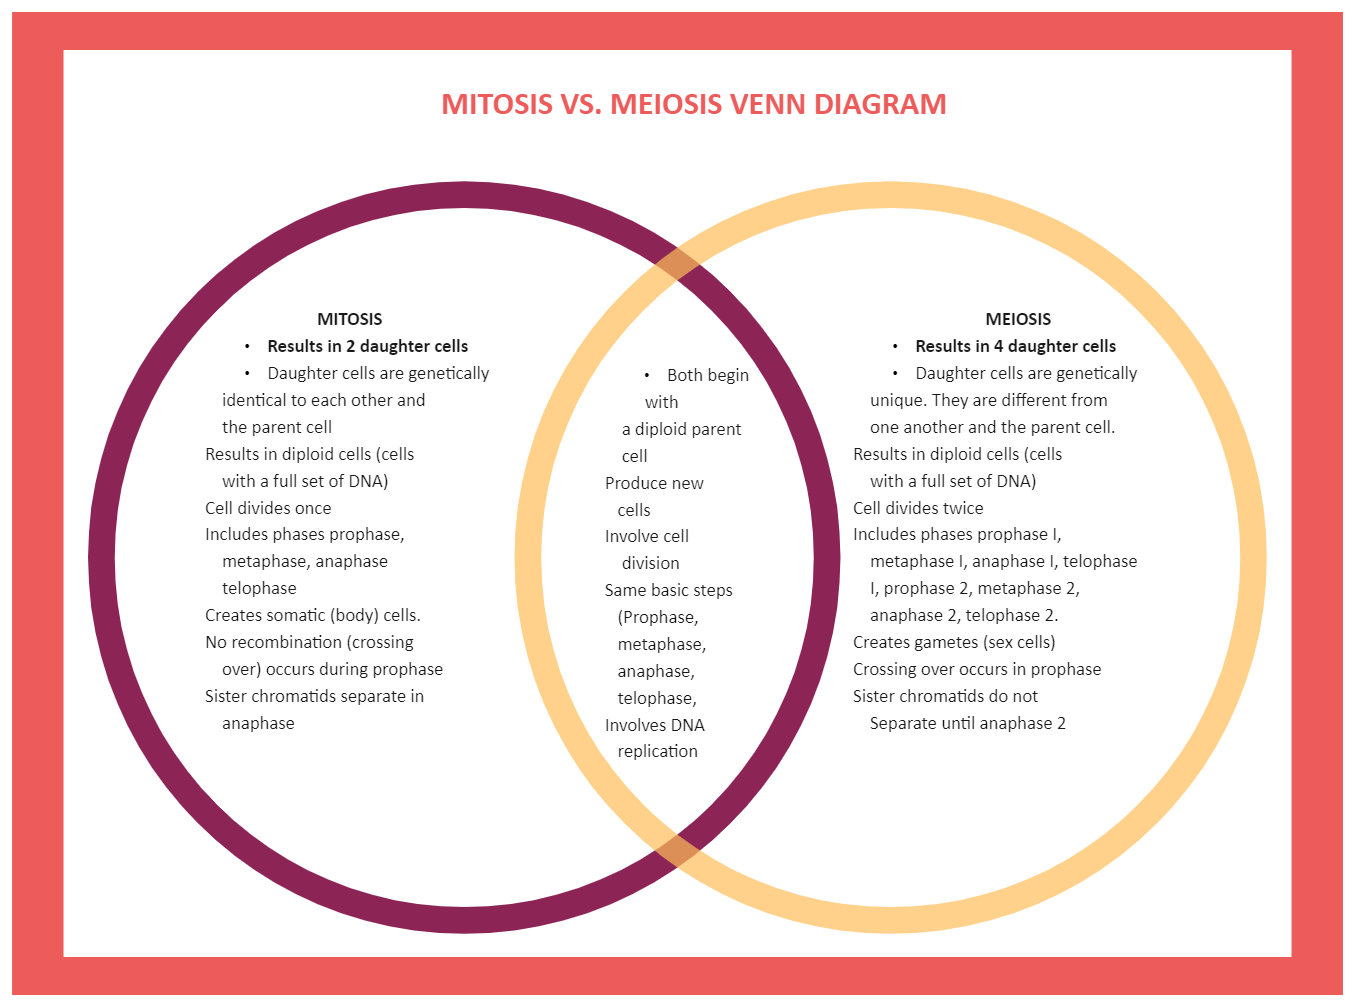 Mitosis and Meiosis Venn Diagram